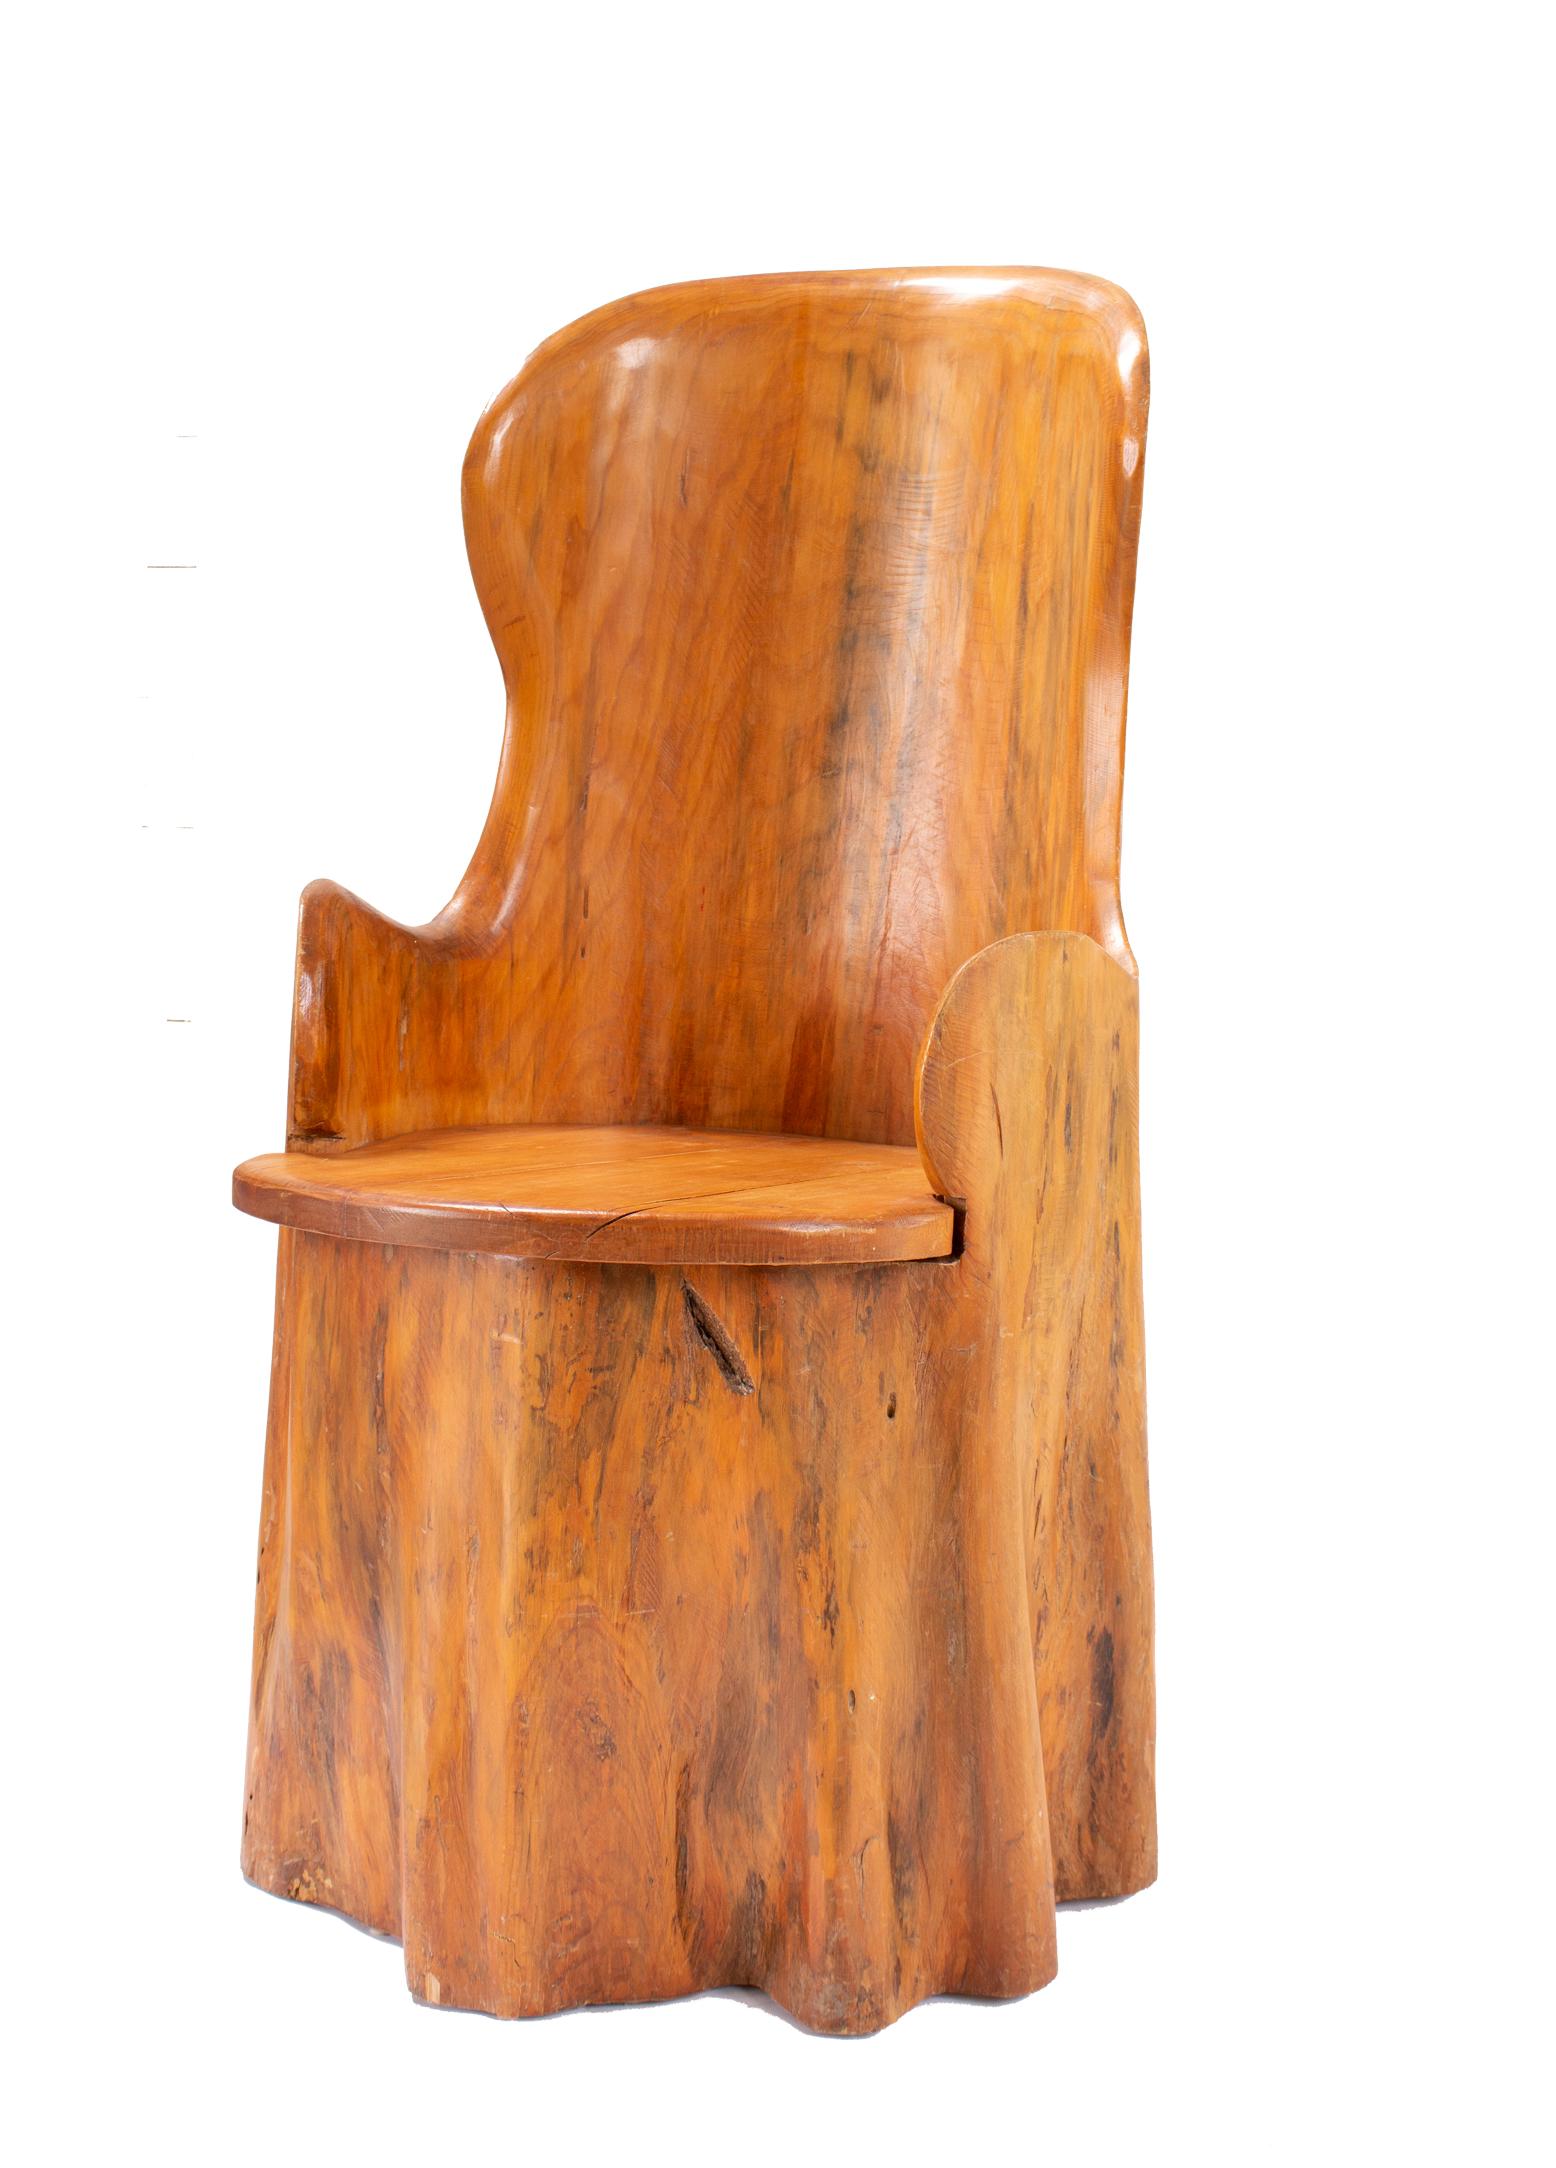 Skandinavischer Holzfassstuhl aus dem 19. Jahrhundert. Ein runder, schöner Holzstuhl mit Patina und weichen Kanten, der aus einem natürlich geformten Baumstamm ausgehöhlt wurde. Es hat eine organische, natürliche Form, fast wie ein drapiertes Tuch.